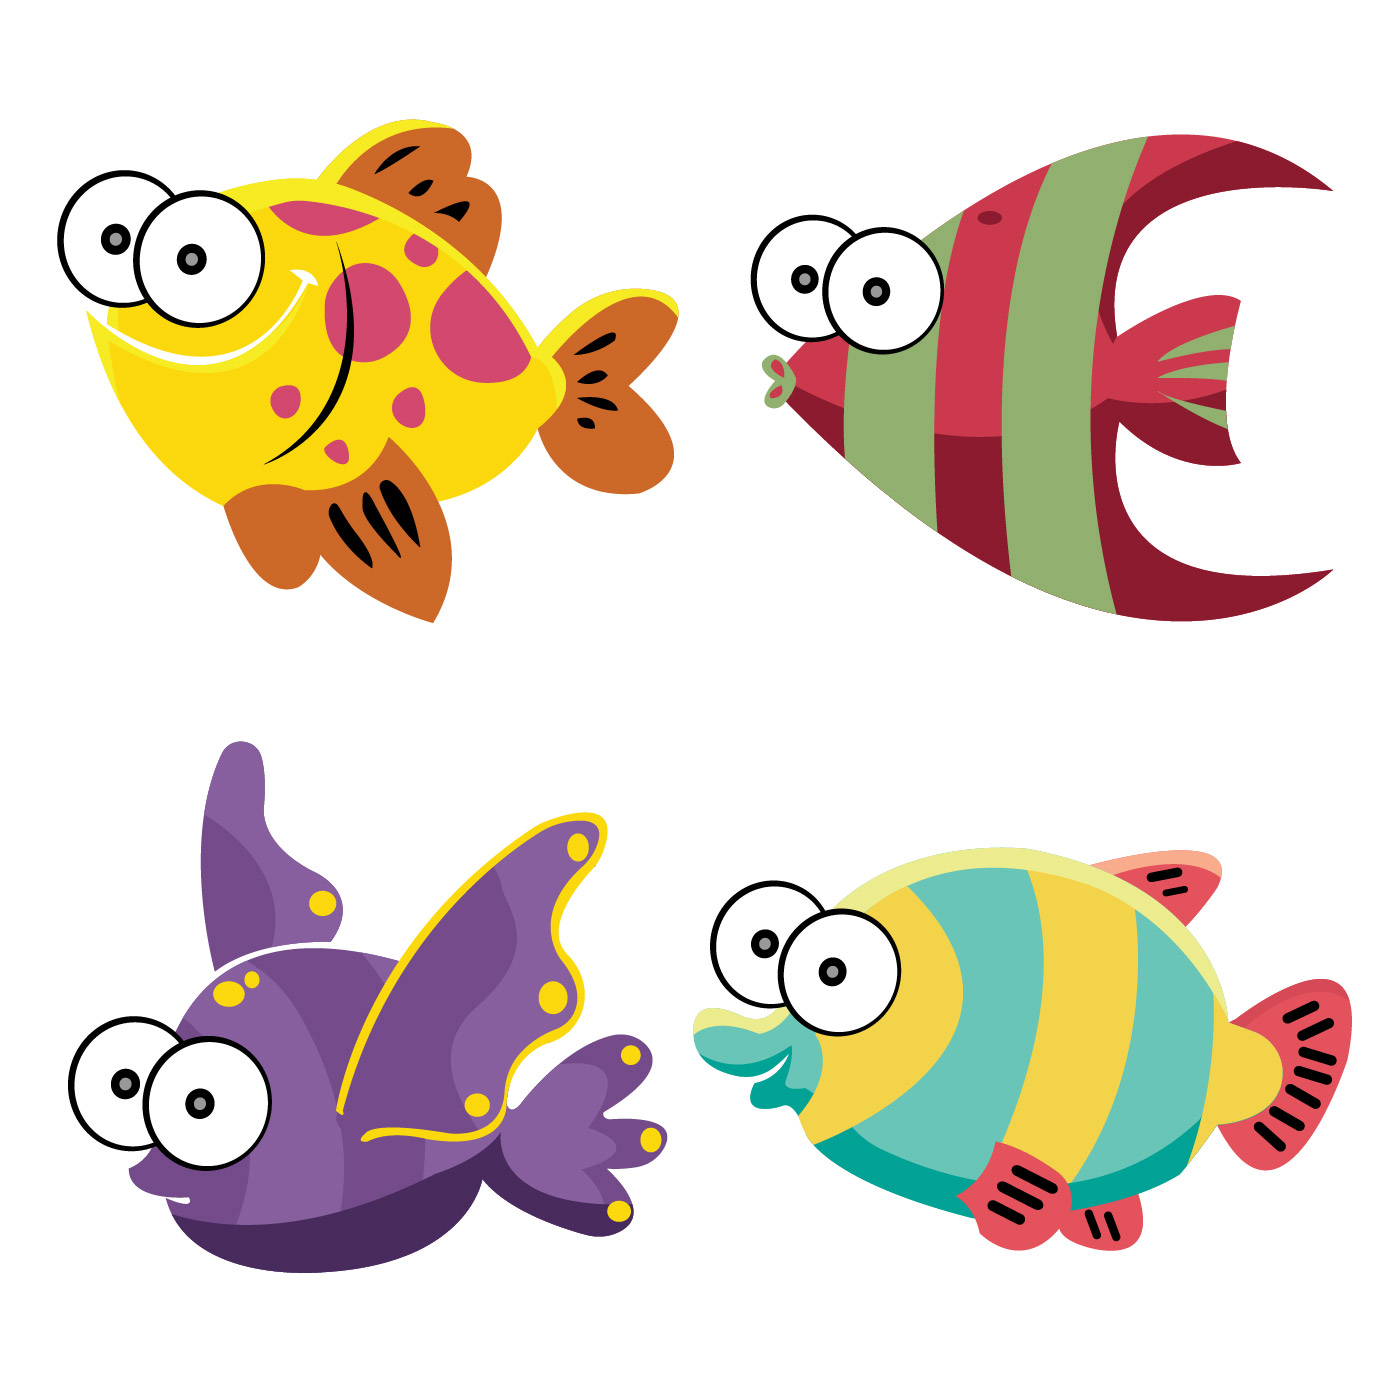 Cartoon Fish Vector Illustration - Download Free Vectors ...